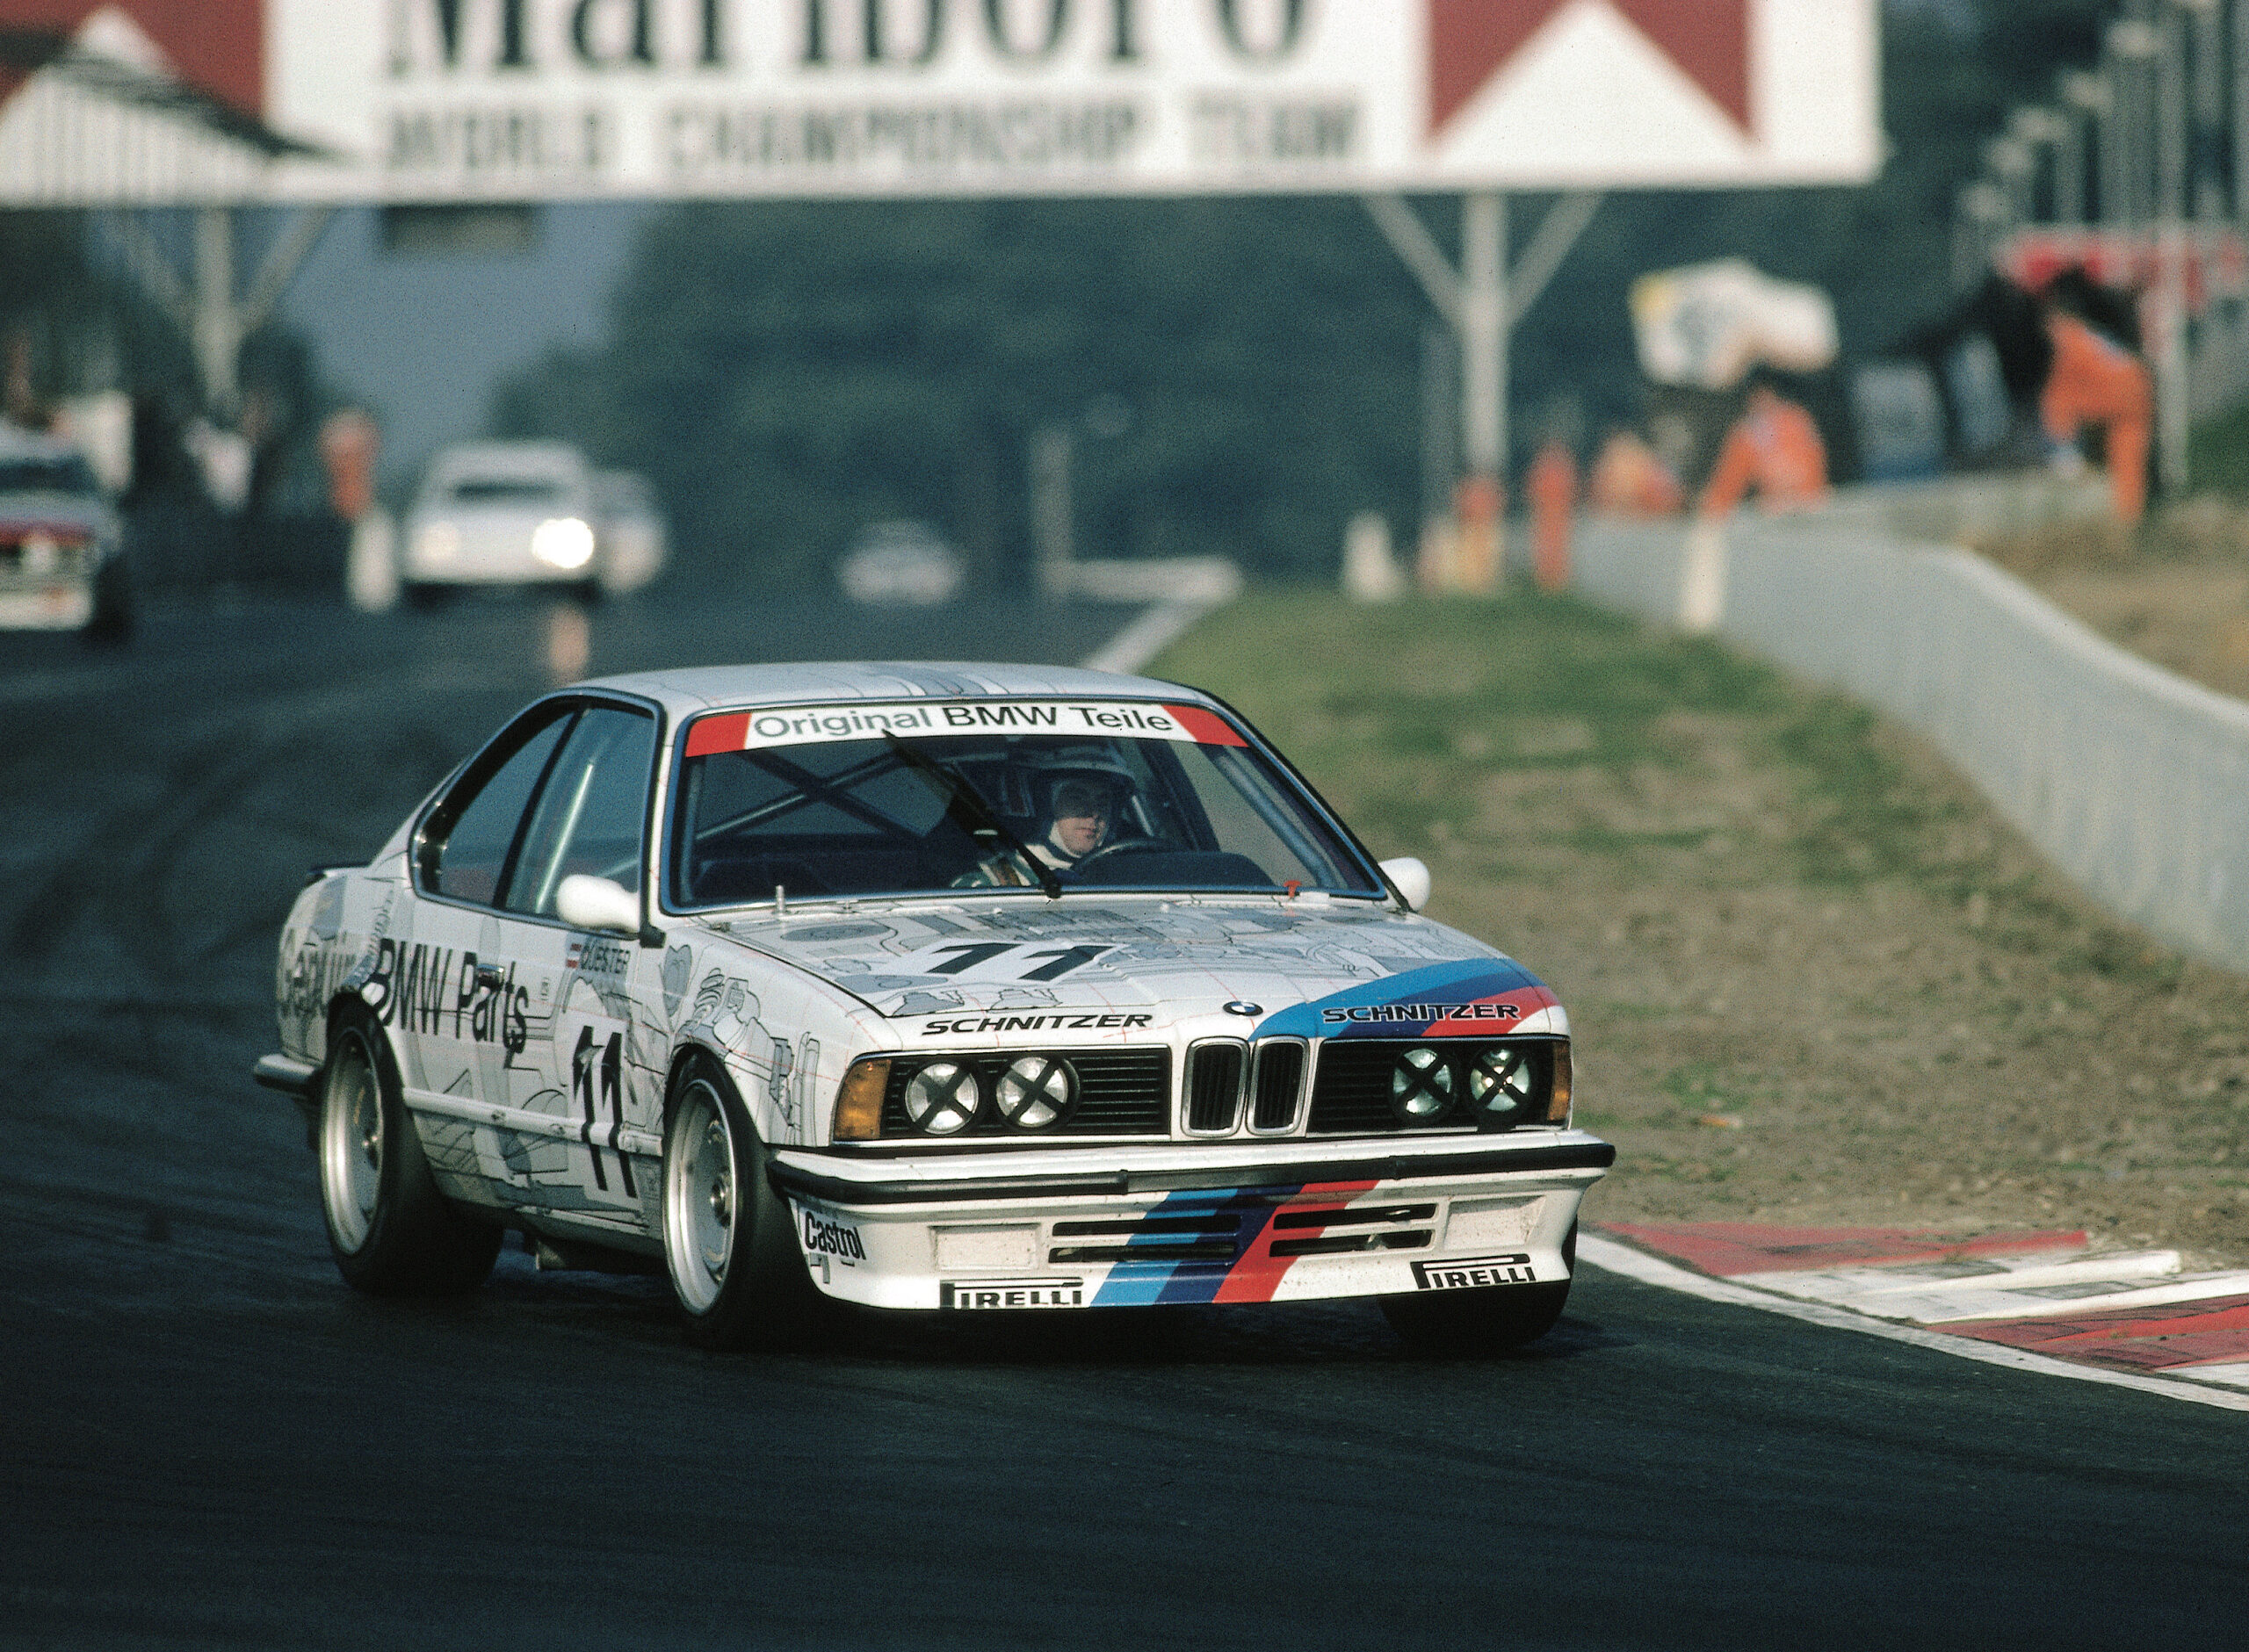 Altfrid-Heger-Gerhard-Berger-BMW-635-CSi-Gruppe-A-Tourenwagen-Europameisterschaft-1986